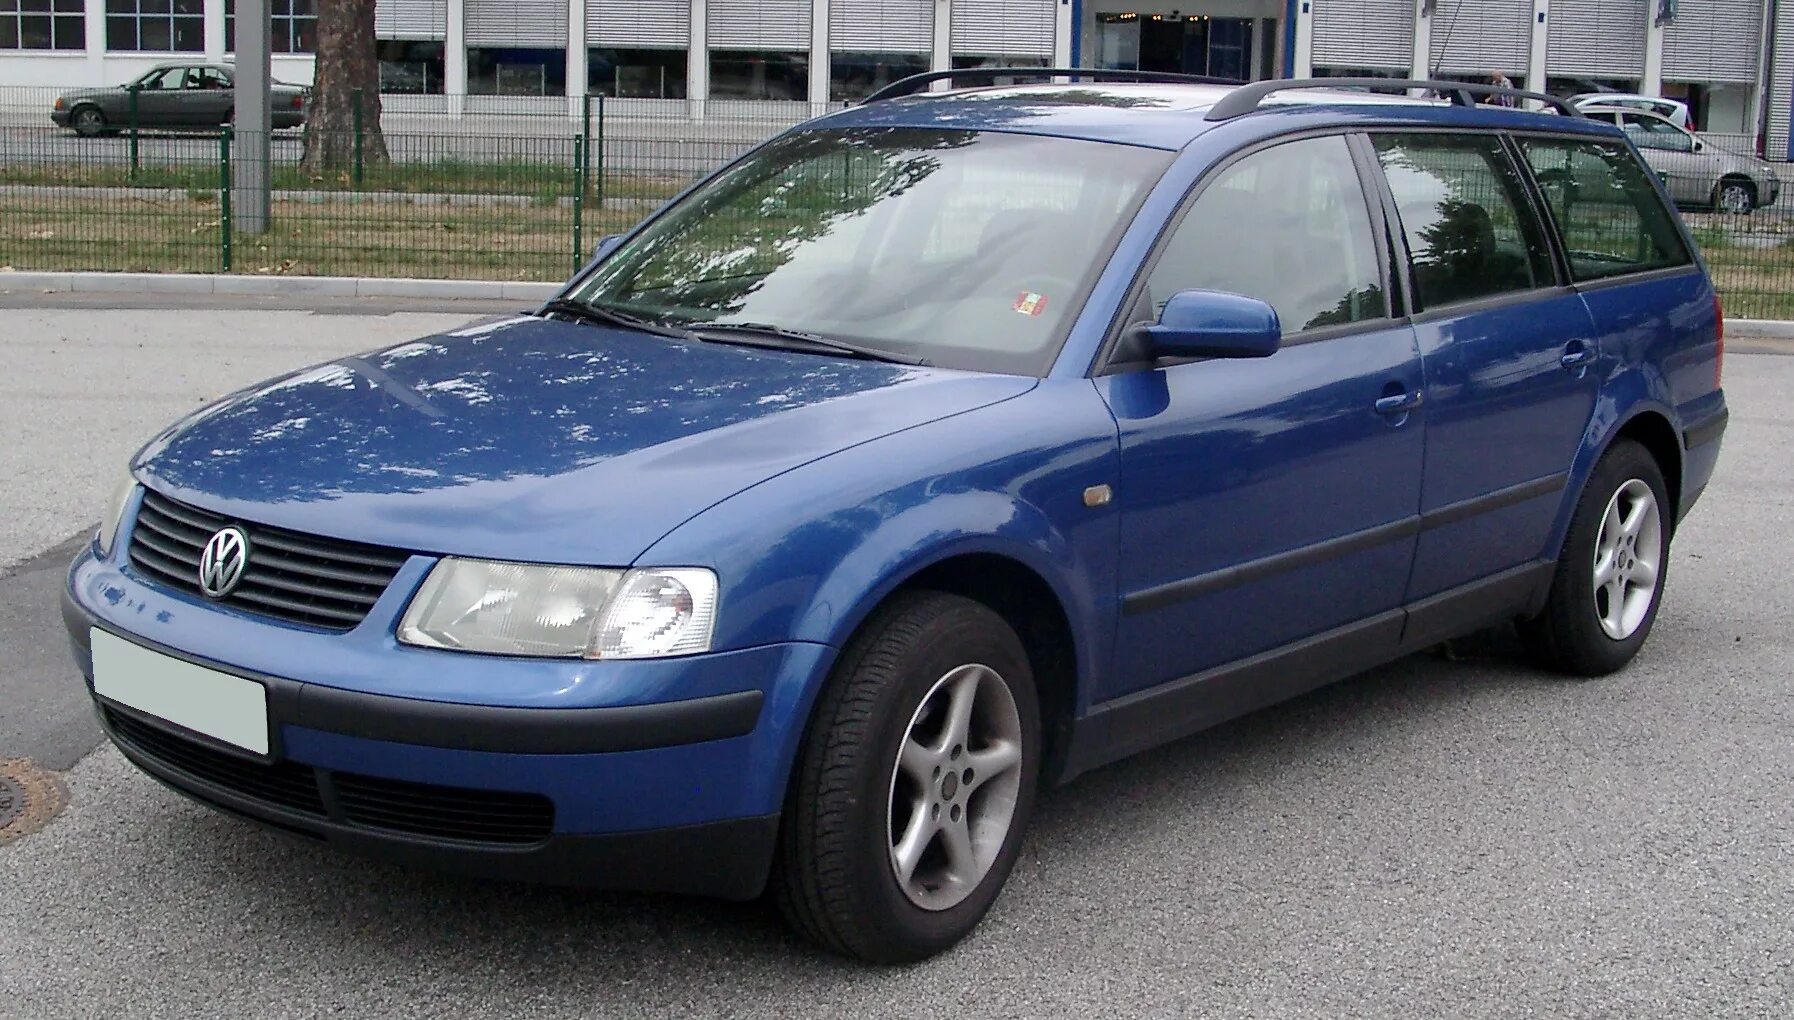 Купить бу фольксваген пассат б5. Passat b5 variant. Volkswagen b5 универсал. VW Passat b5 variant. VW Passat b5 1999 универсал.